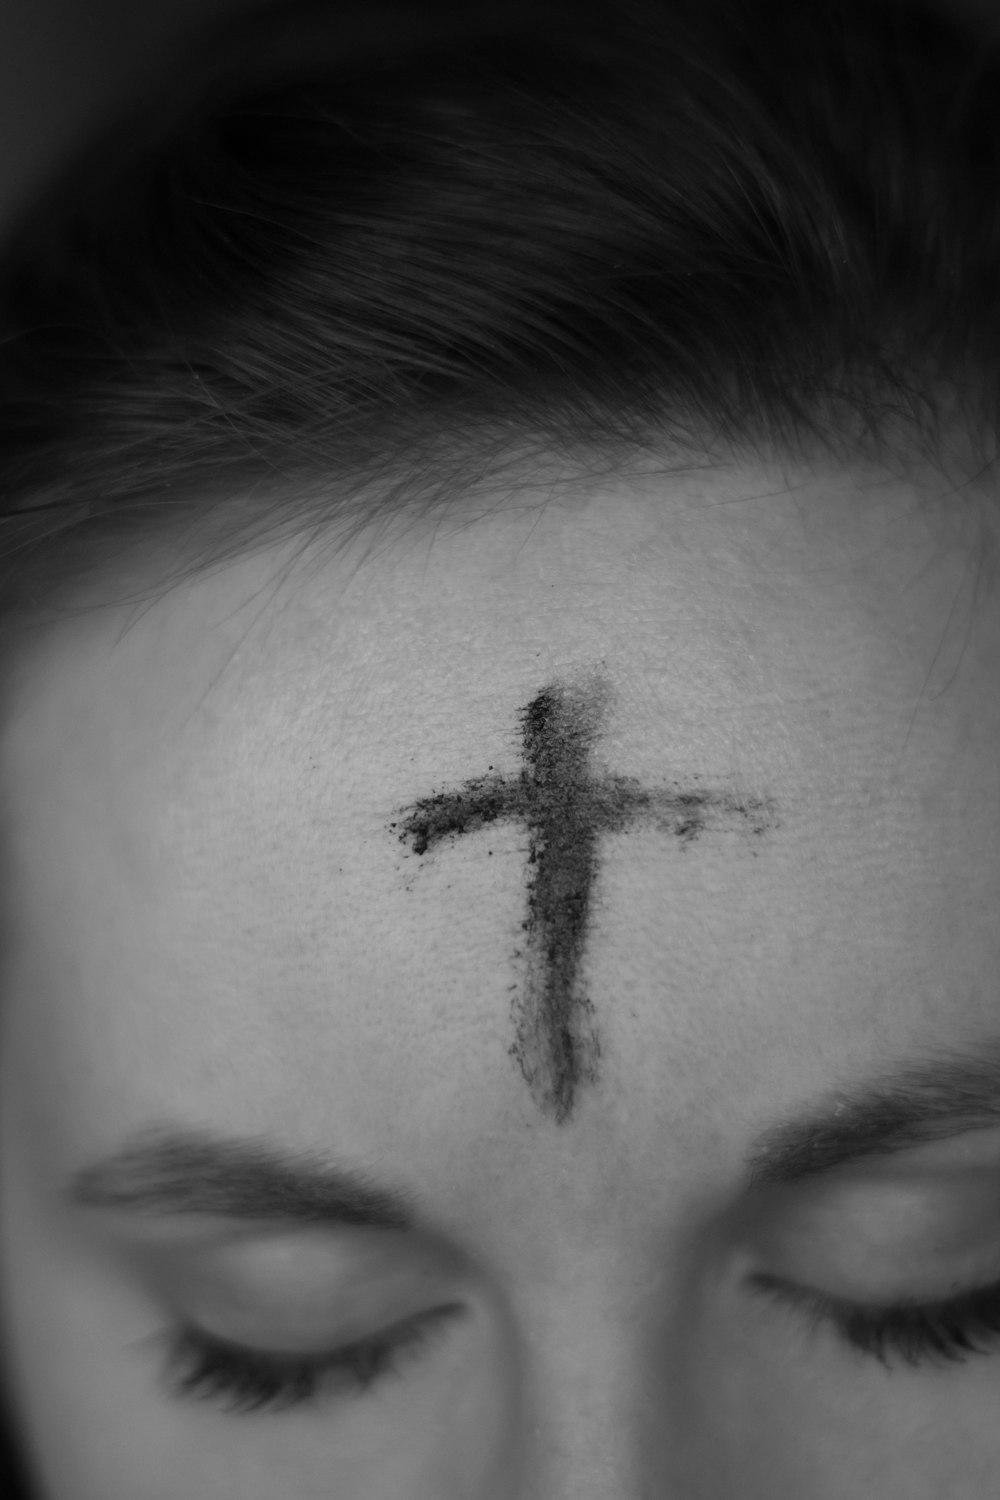 croix sur le front de la personne